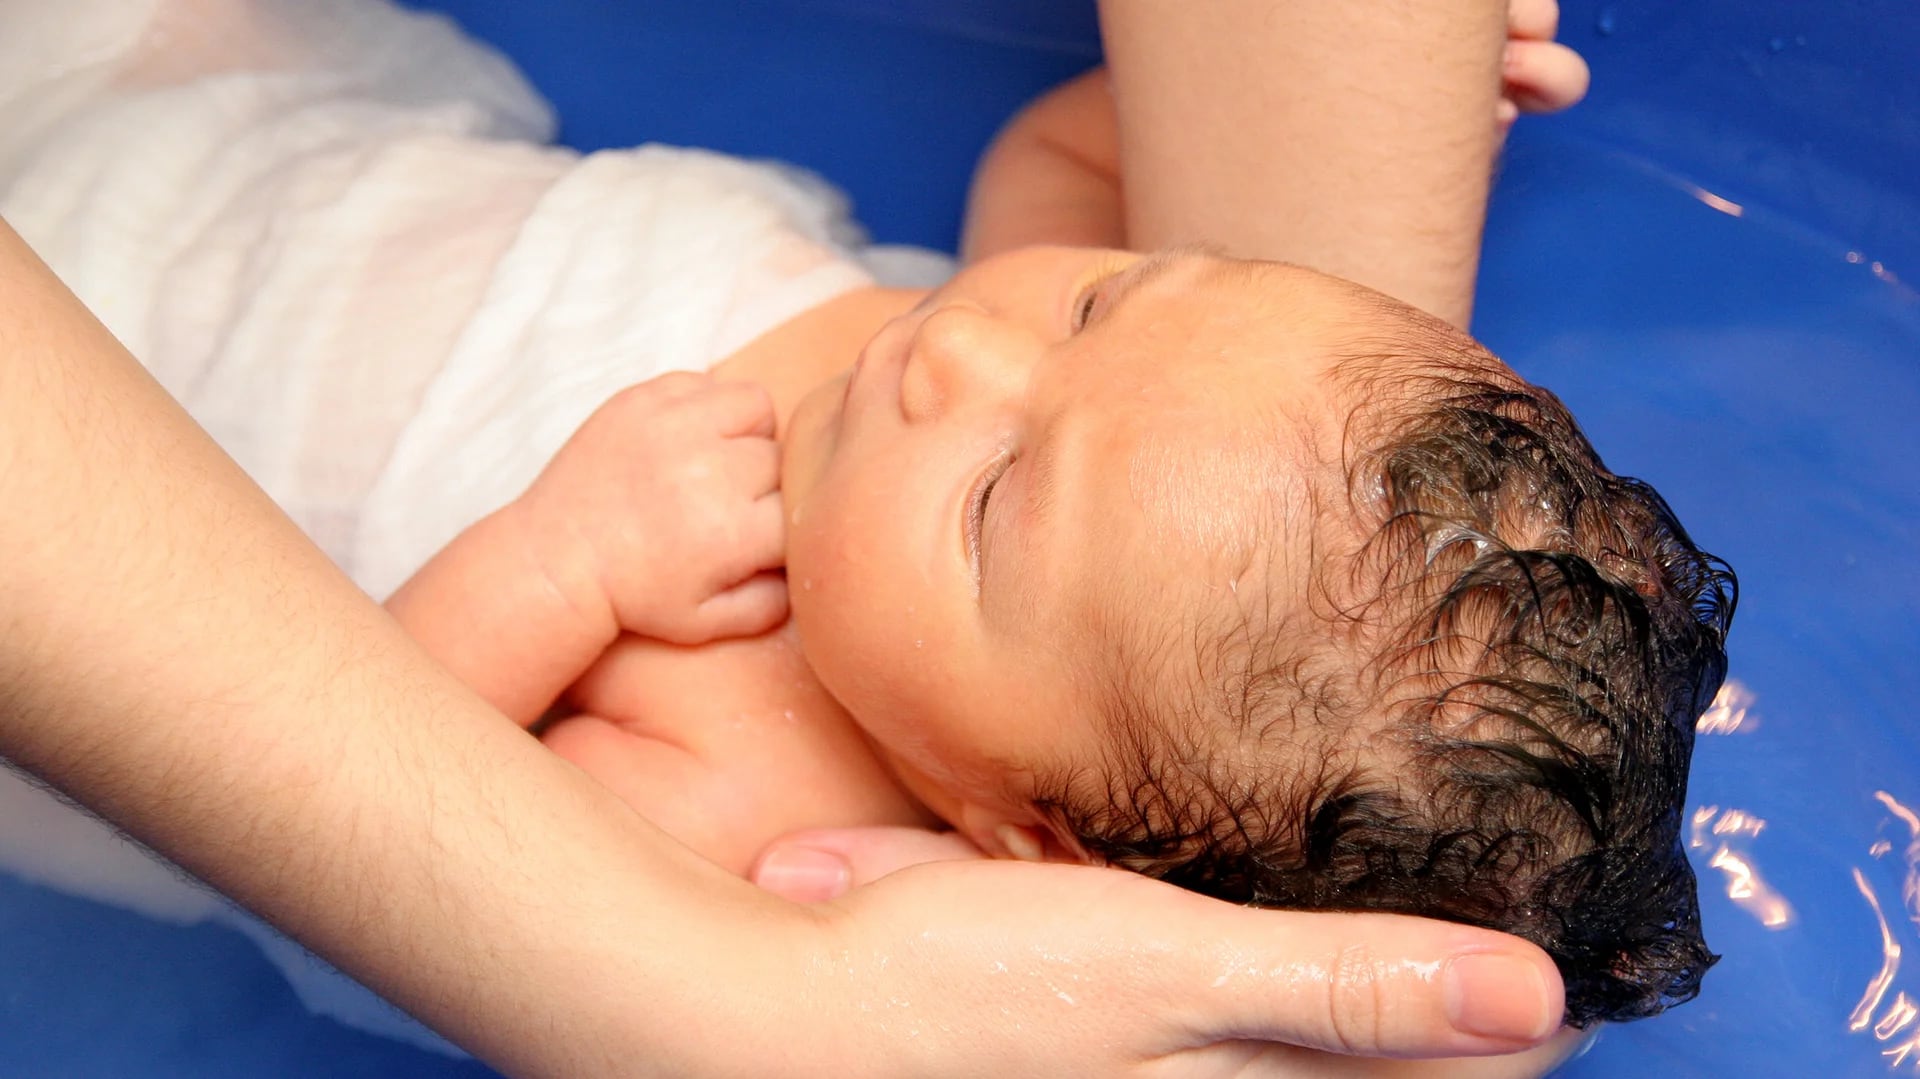 El recién nacido de Neuquén murió por asfixia durante un parto no asistido